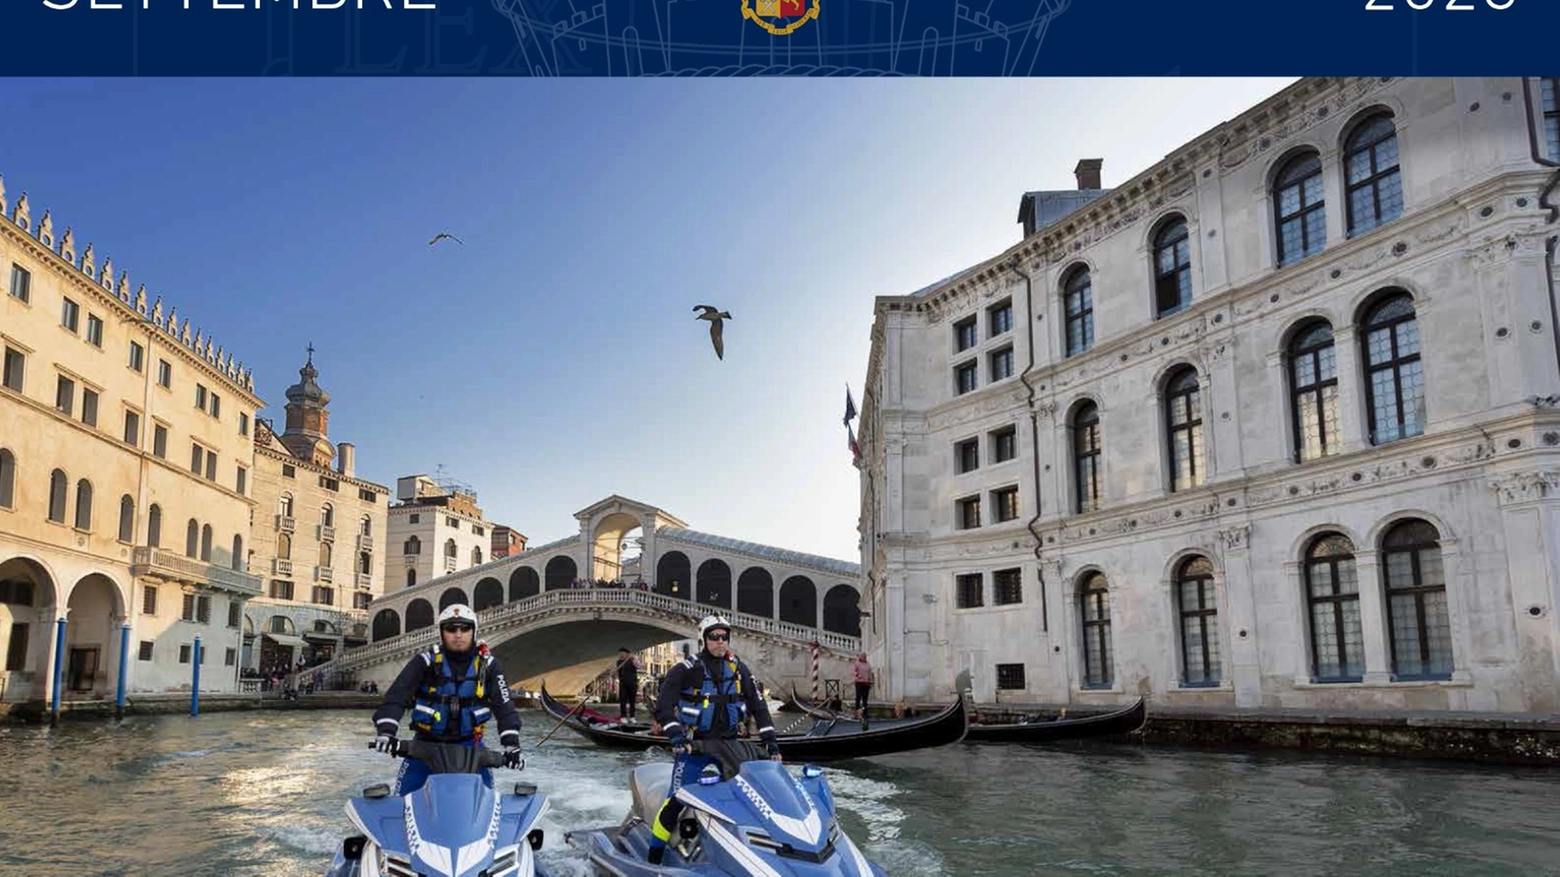 Foto scattata a Venezia per il mese di settembre (Polizia di Stato)